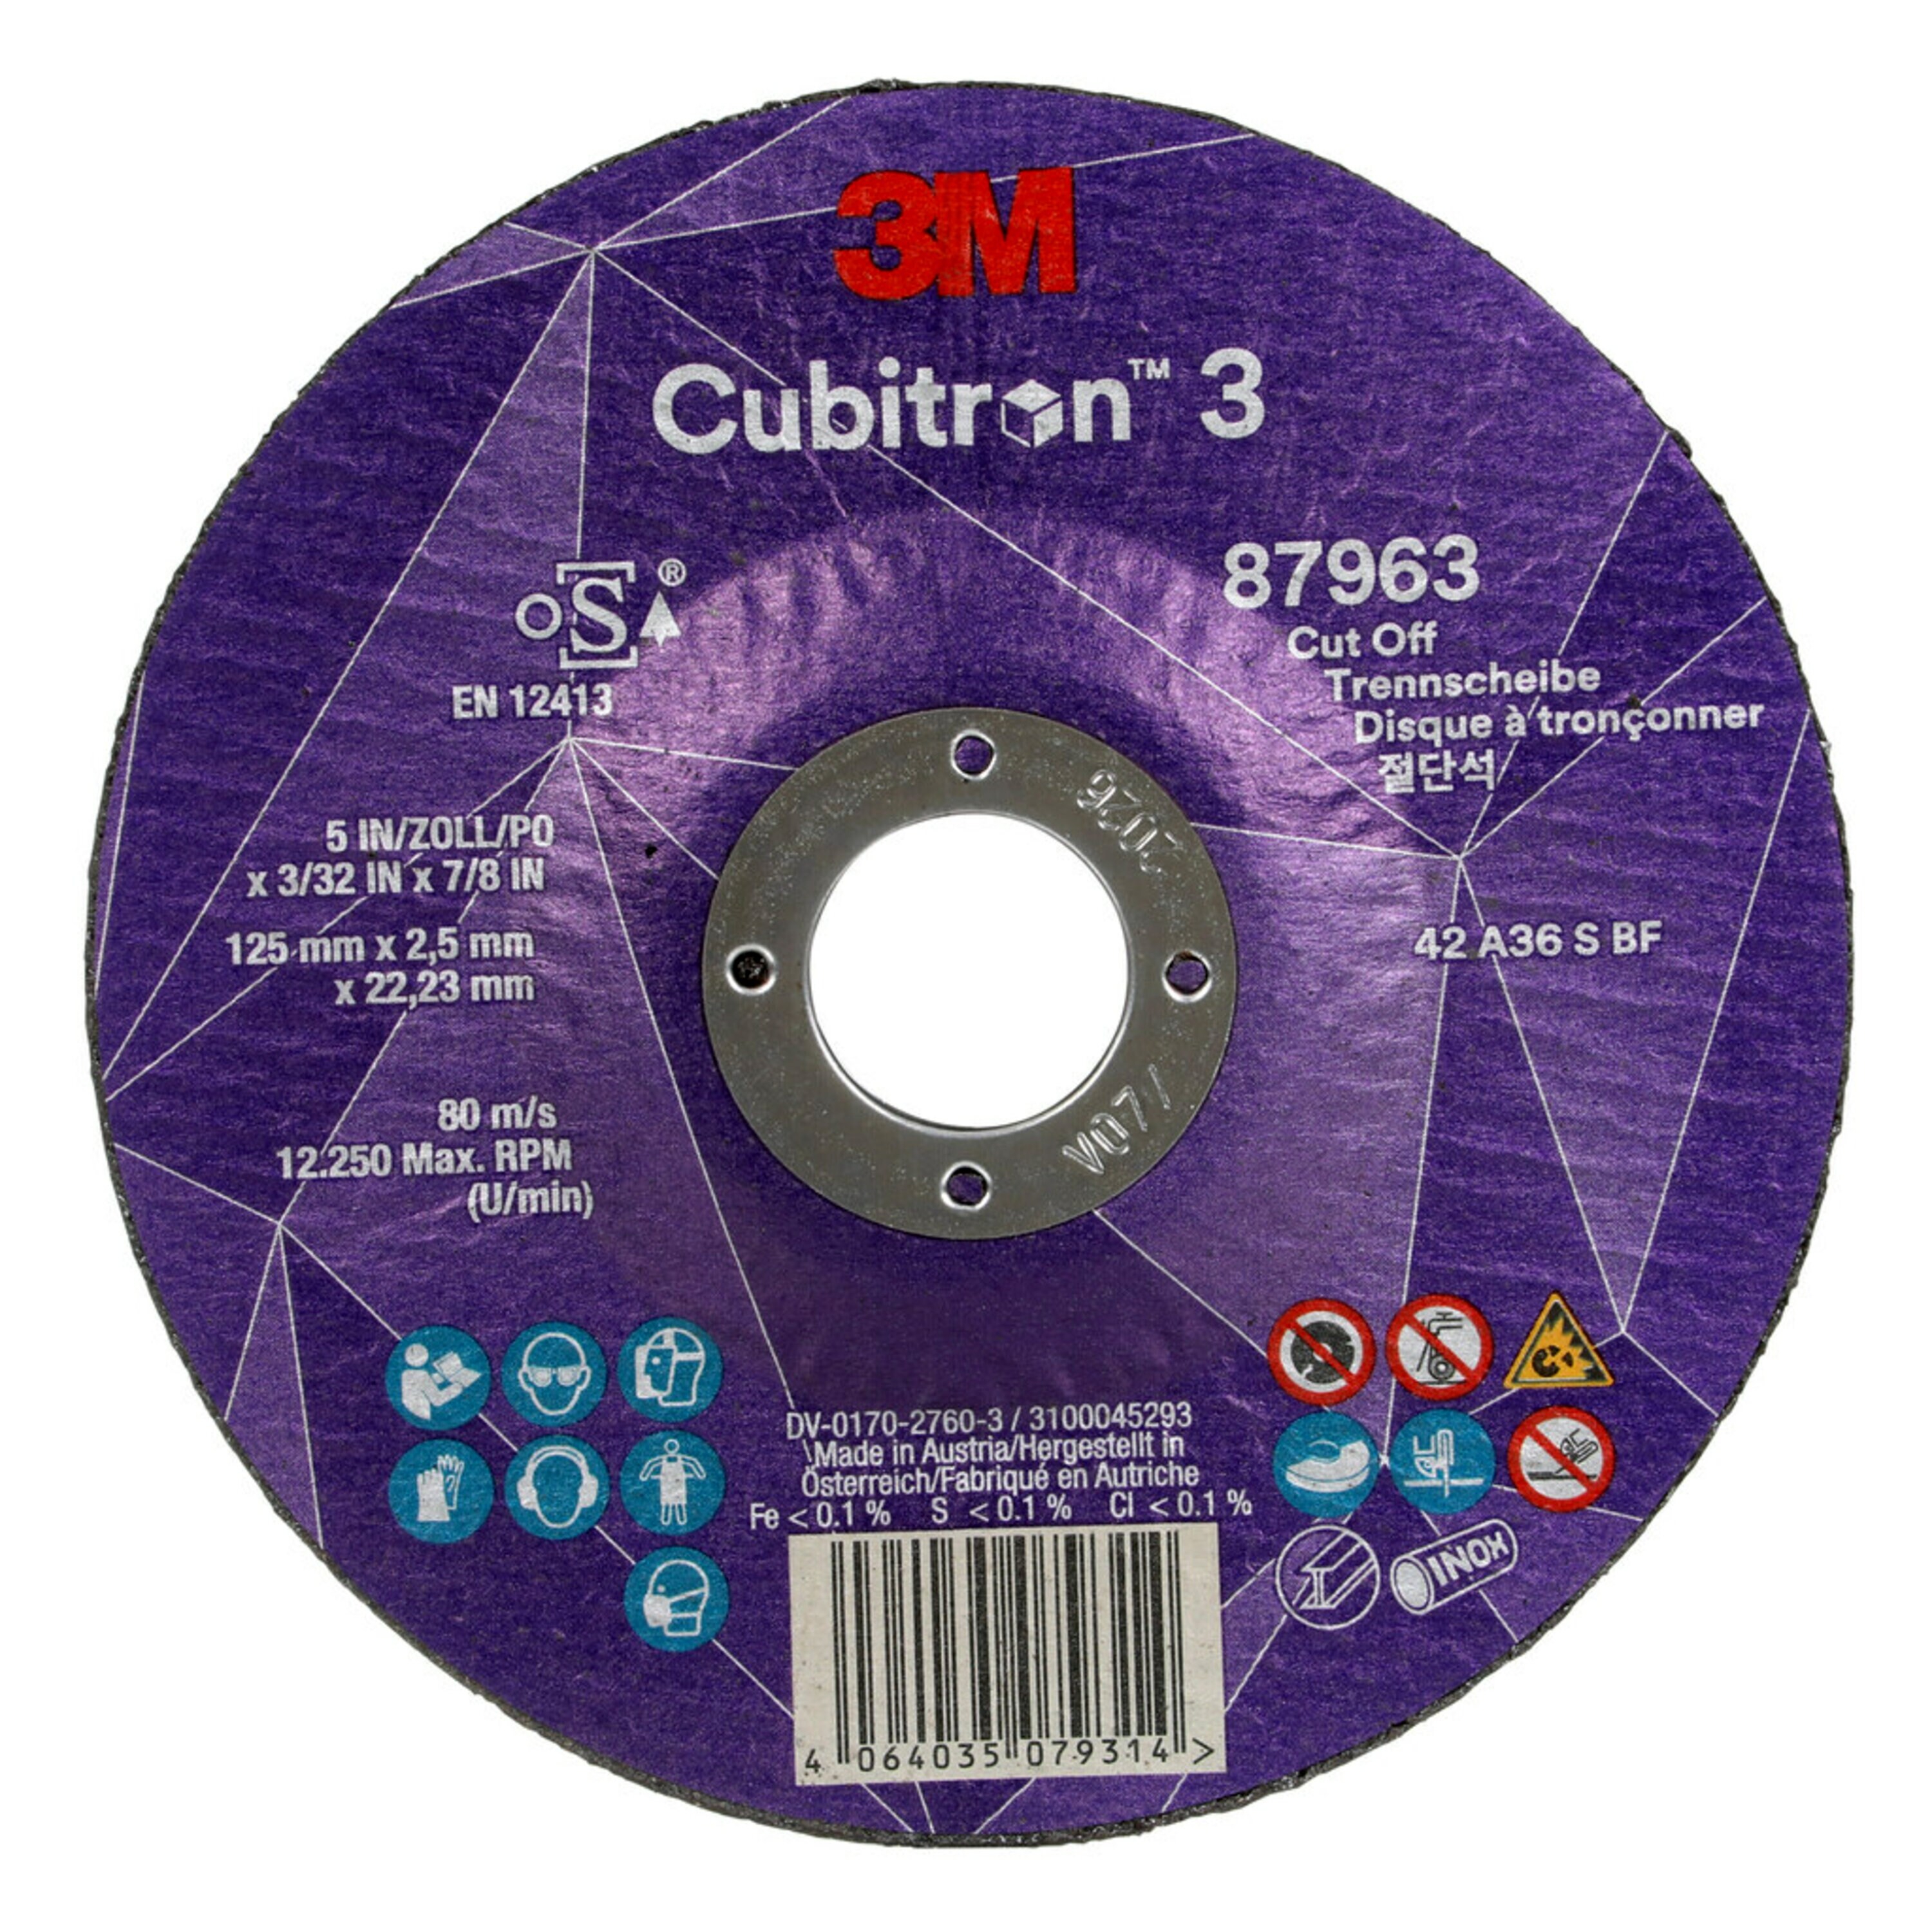 Disco de corte 3M Cubitron 3, 125 mm, 2,5 mm, 22,23 mm, 36+, tipo 42 #87963